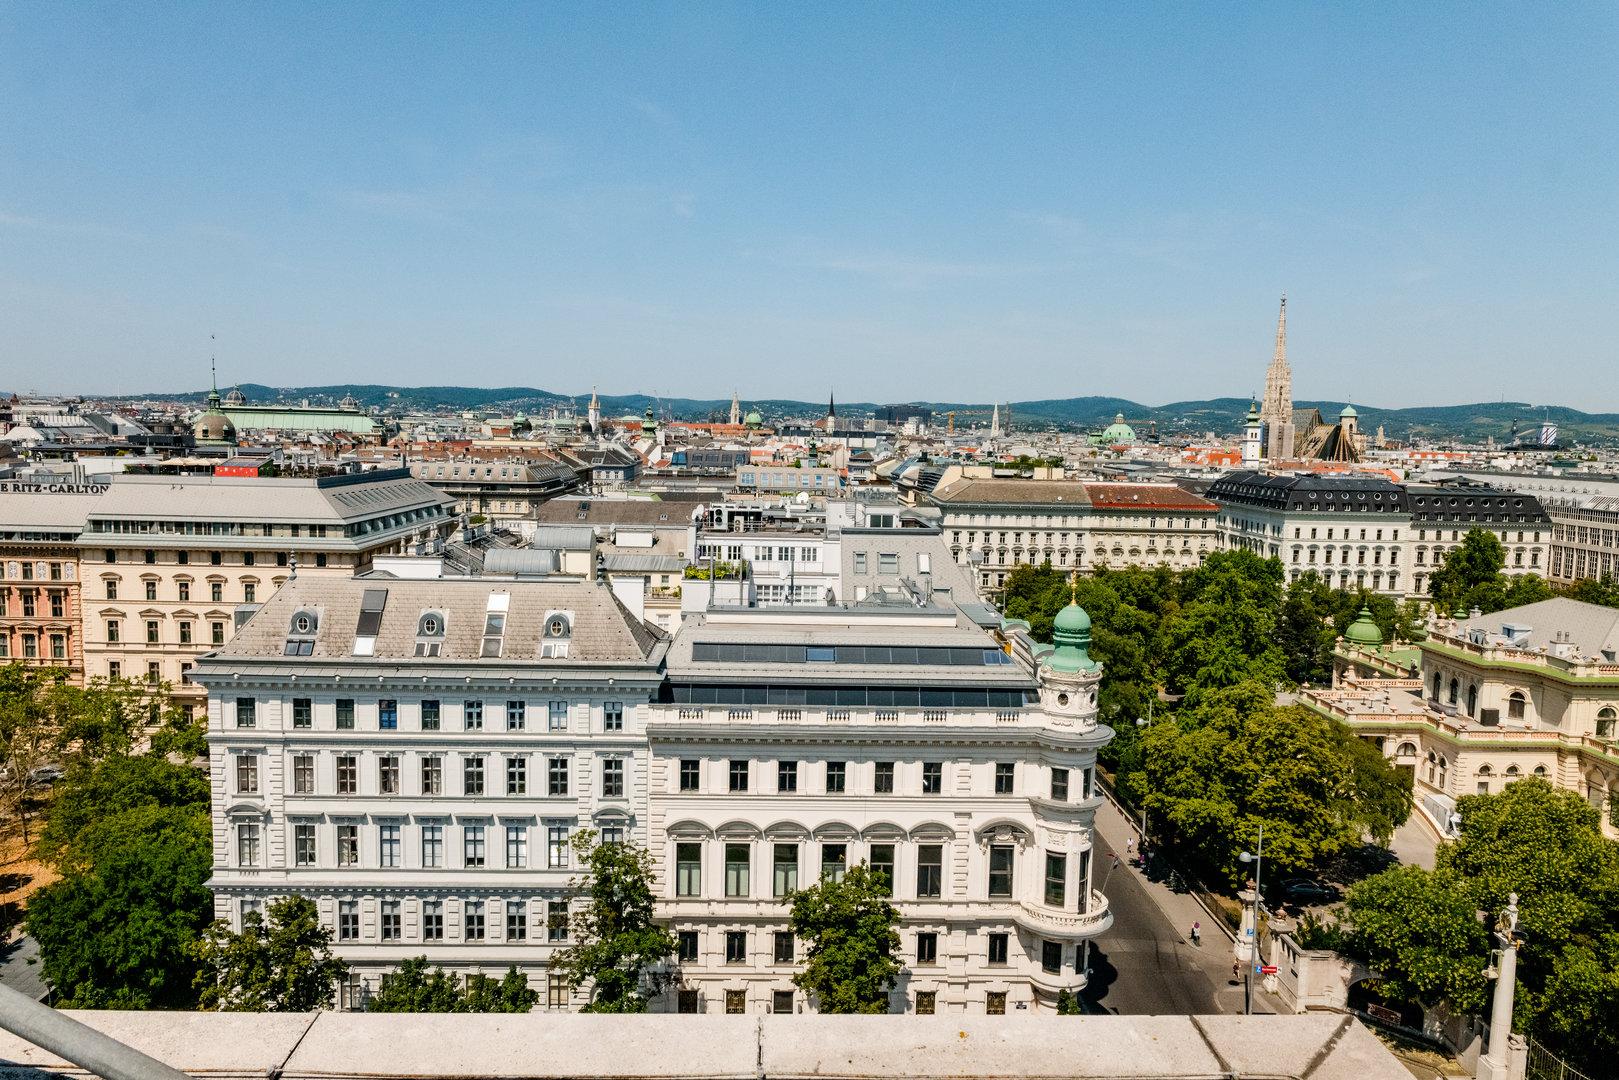 Begehrte Städte: Wien auf Platz 2